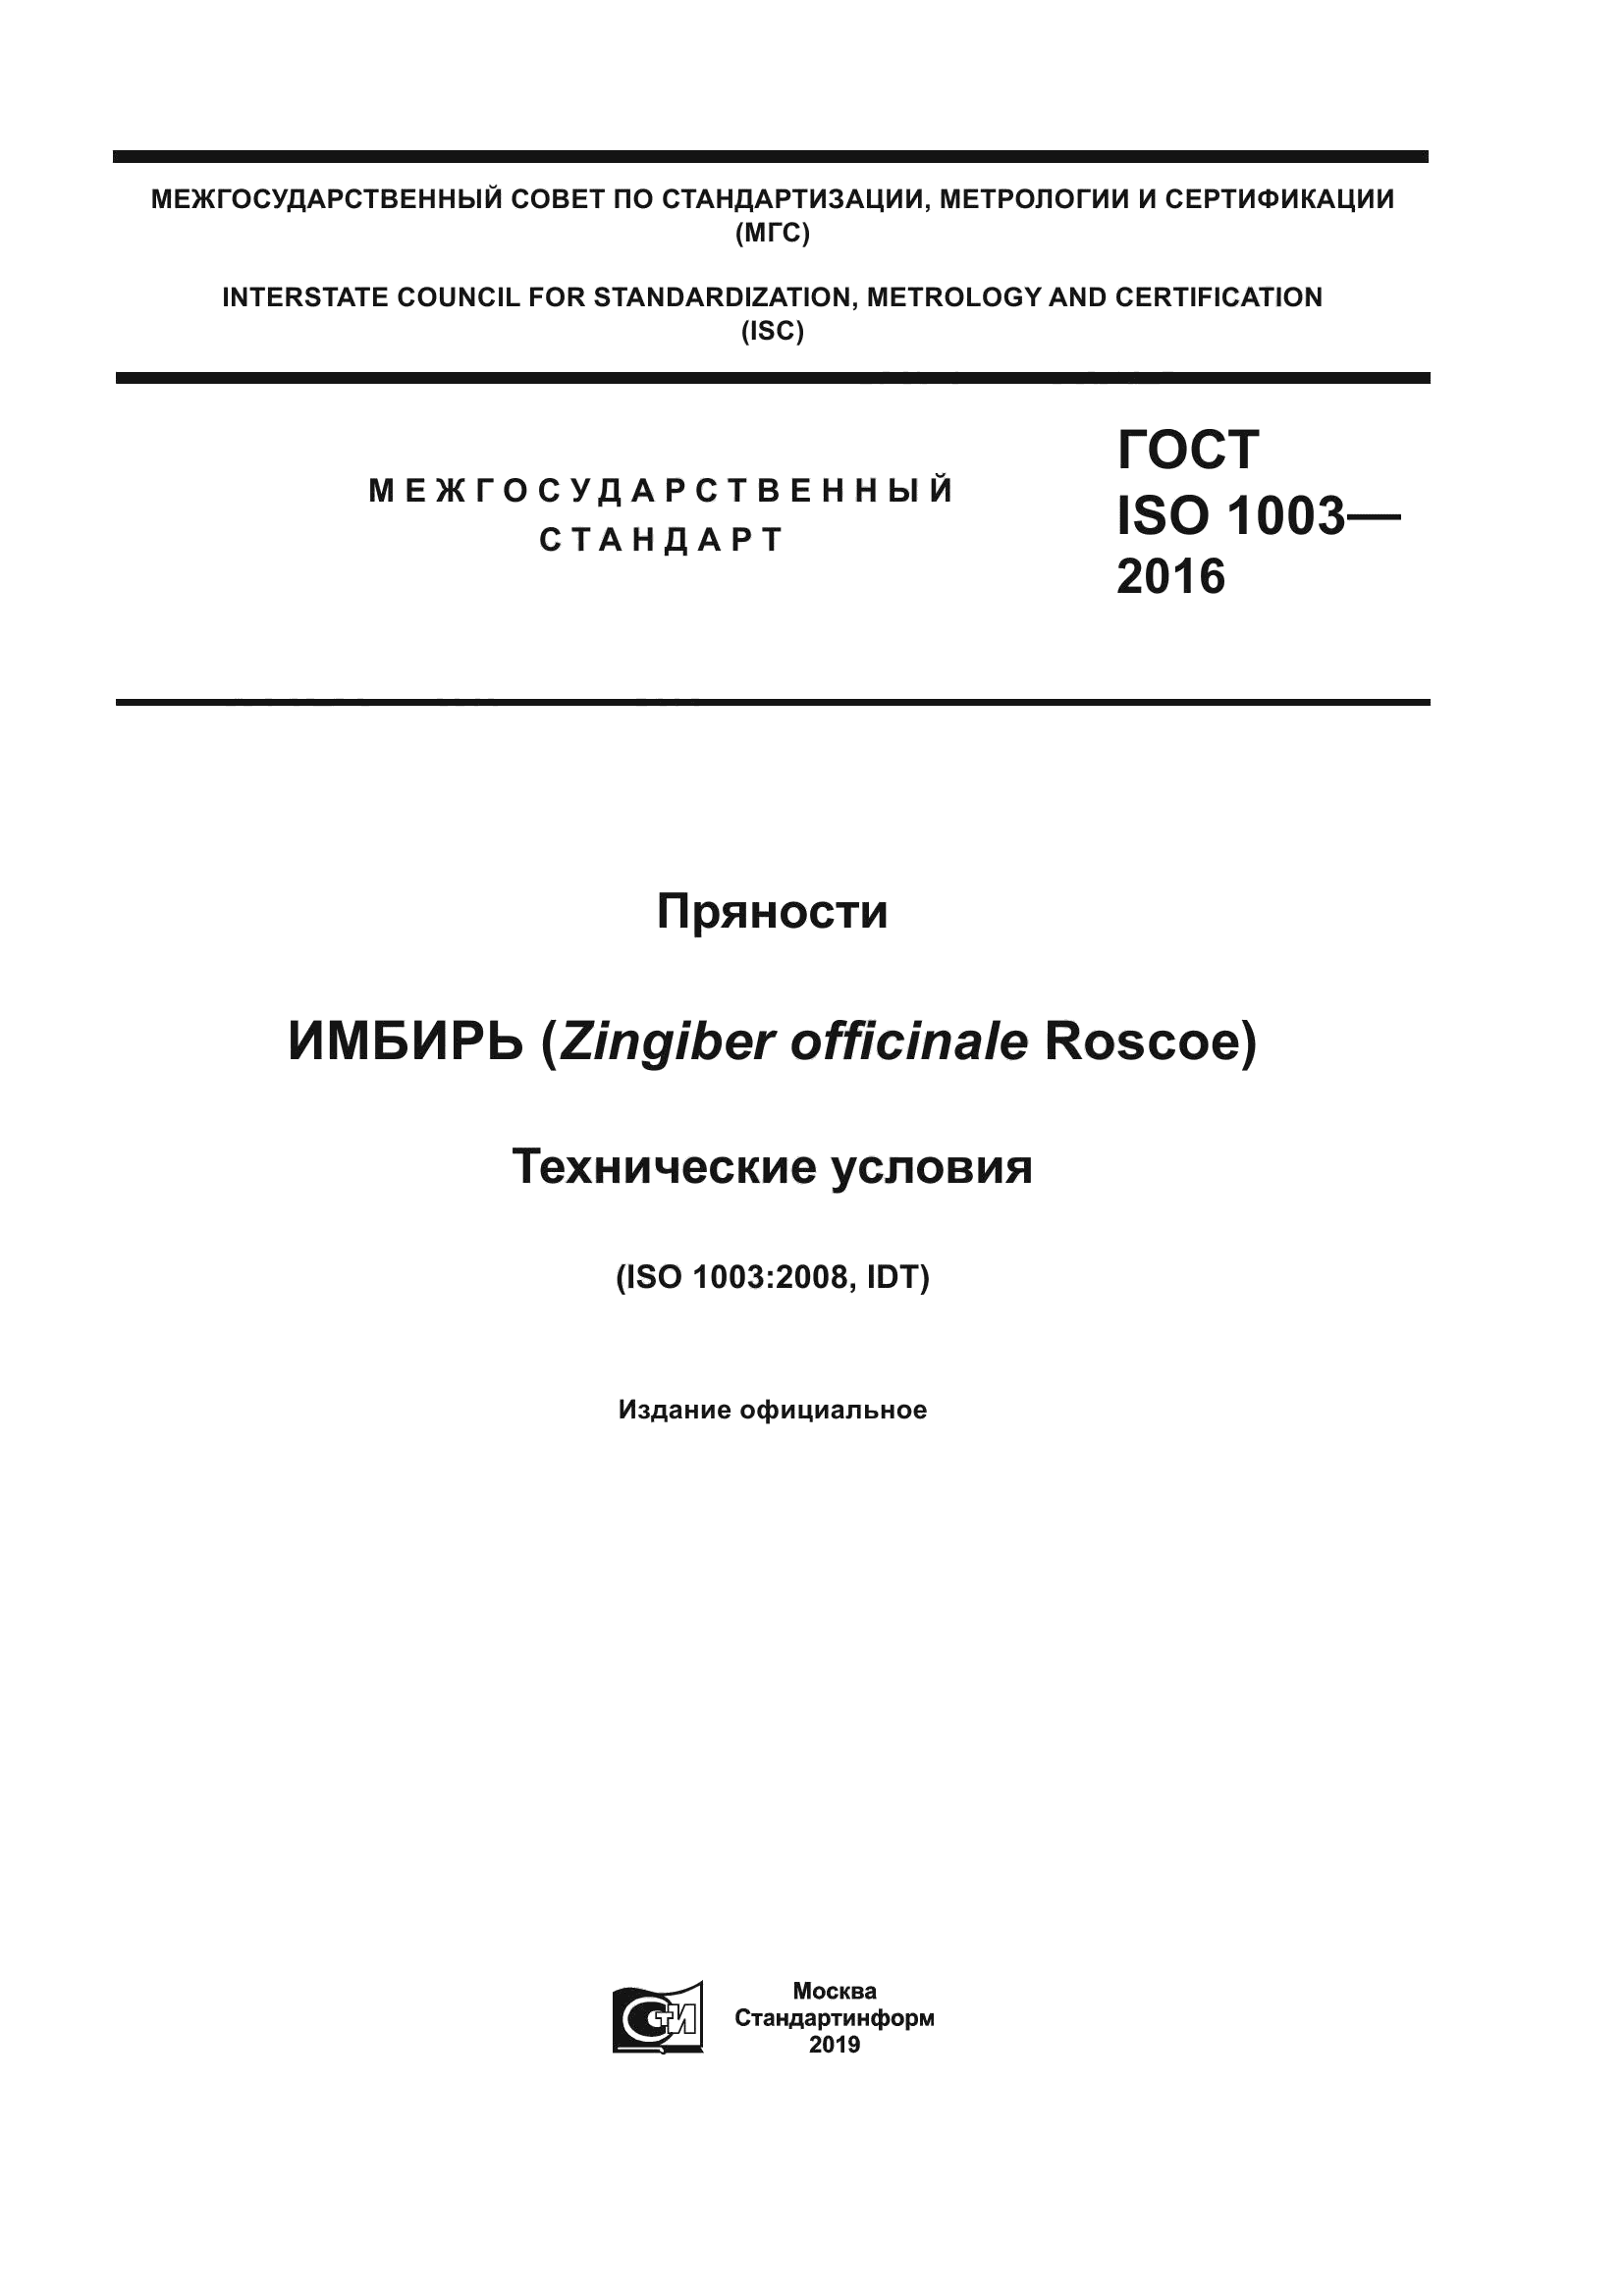 ГОСТ ISO 1003-2016